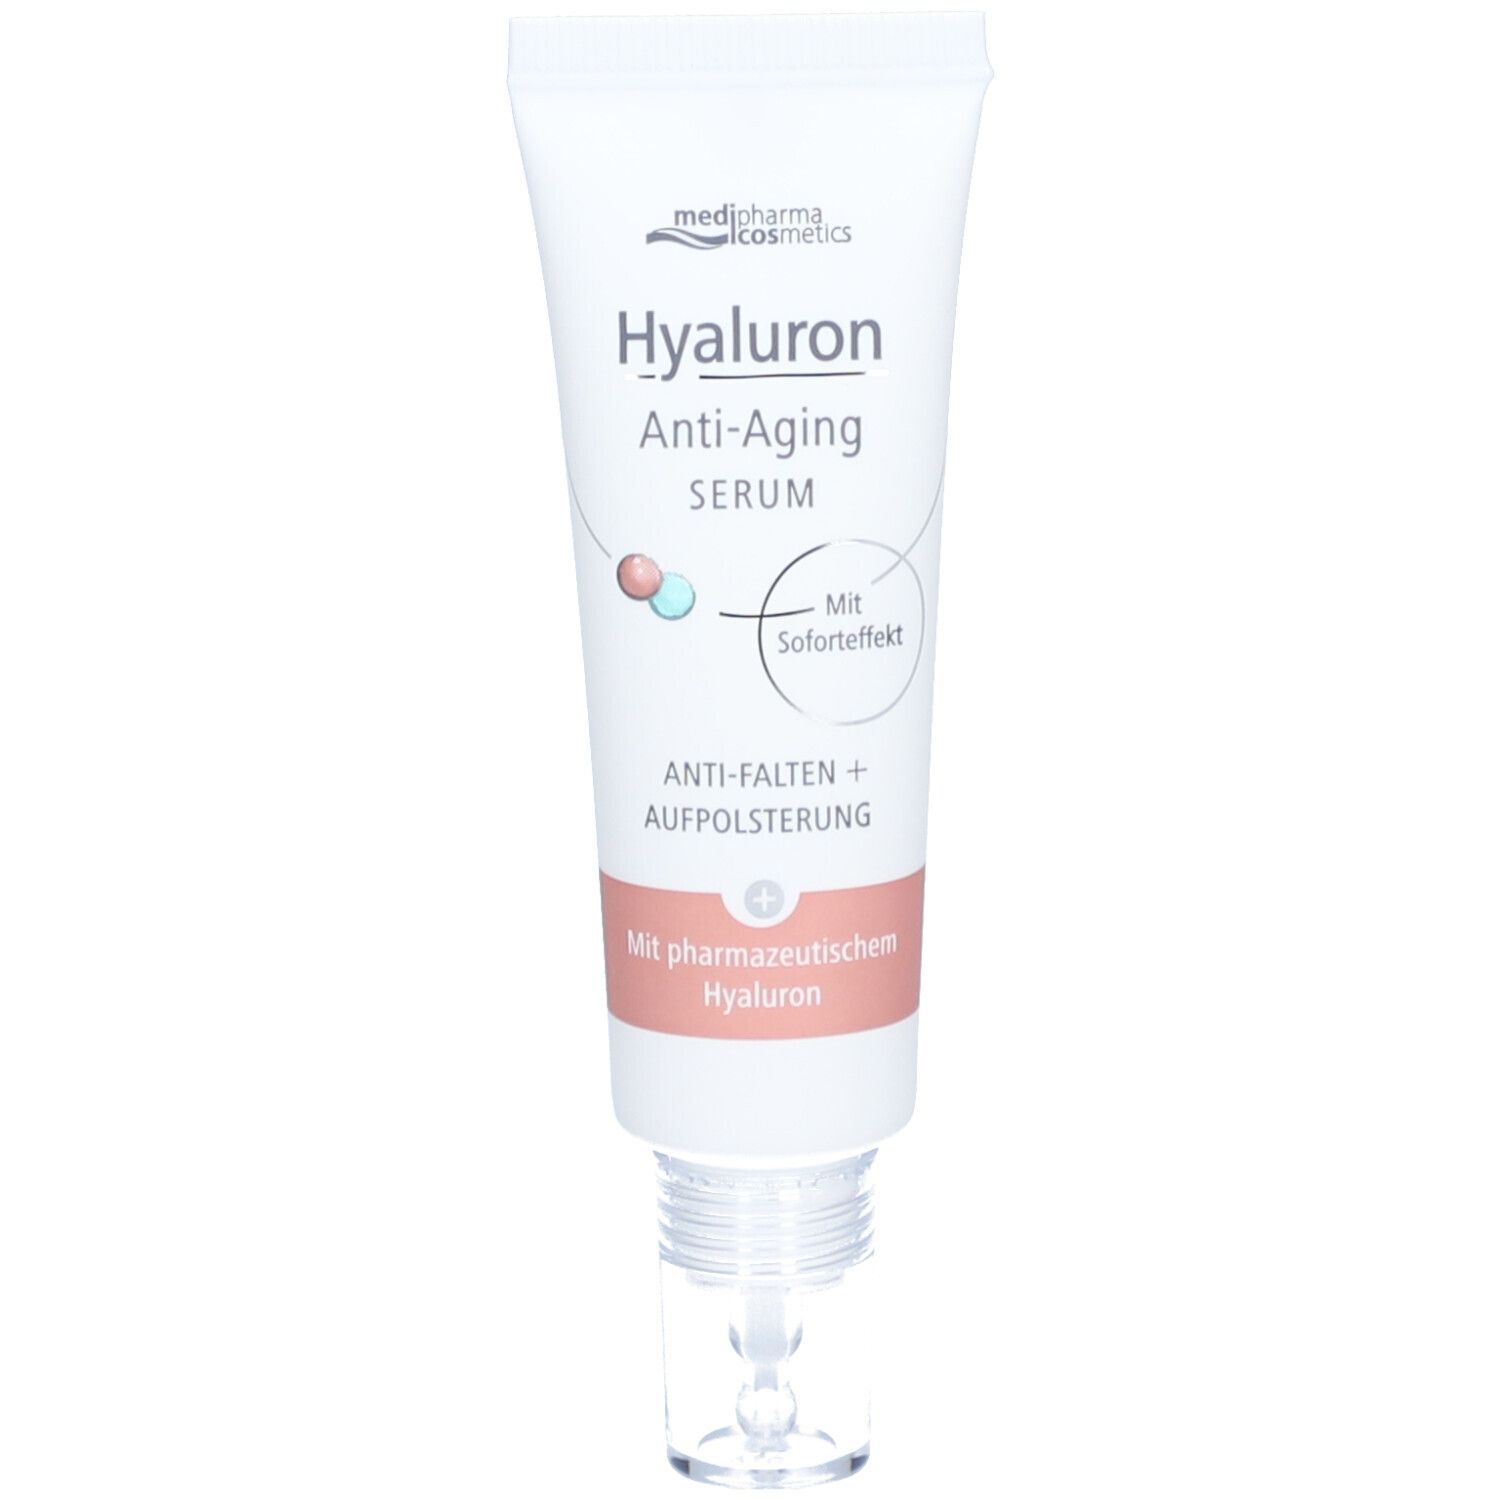 medipharma cosmetics Hyaluron Anti-Aging Serum